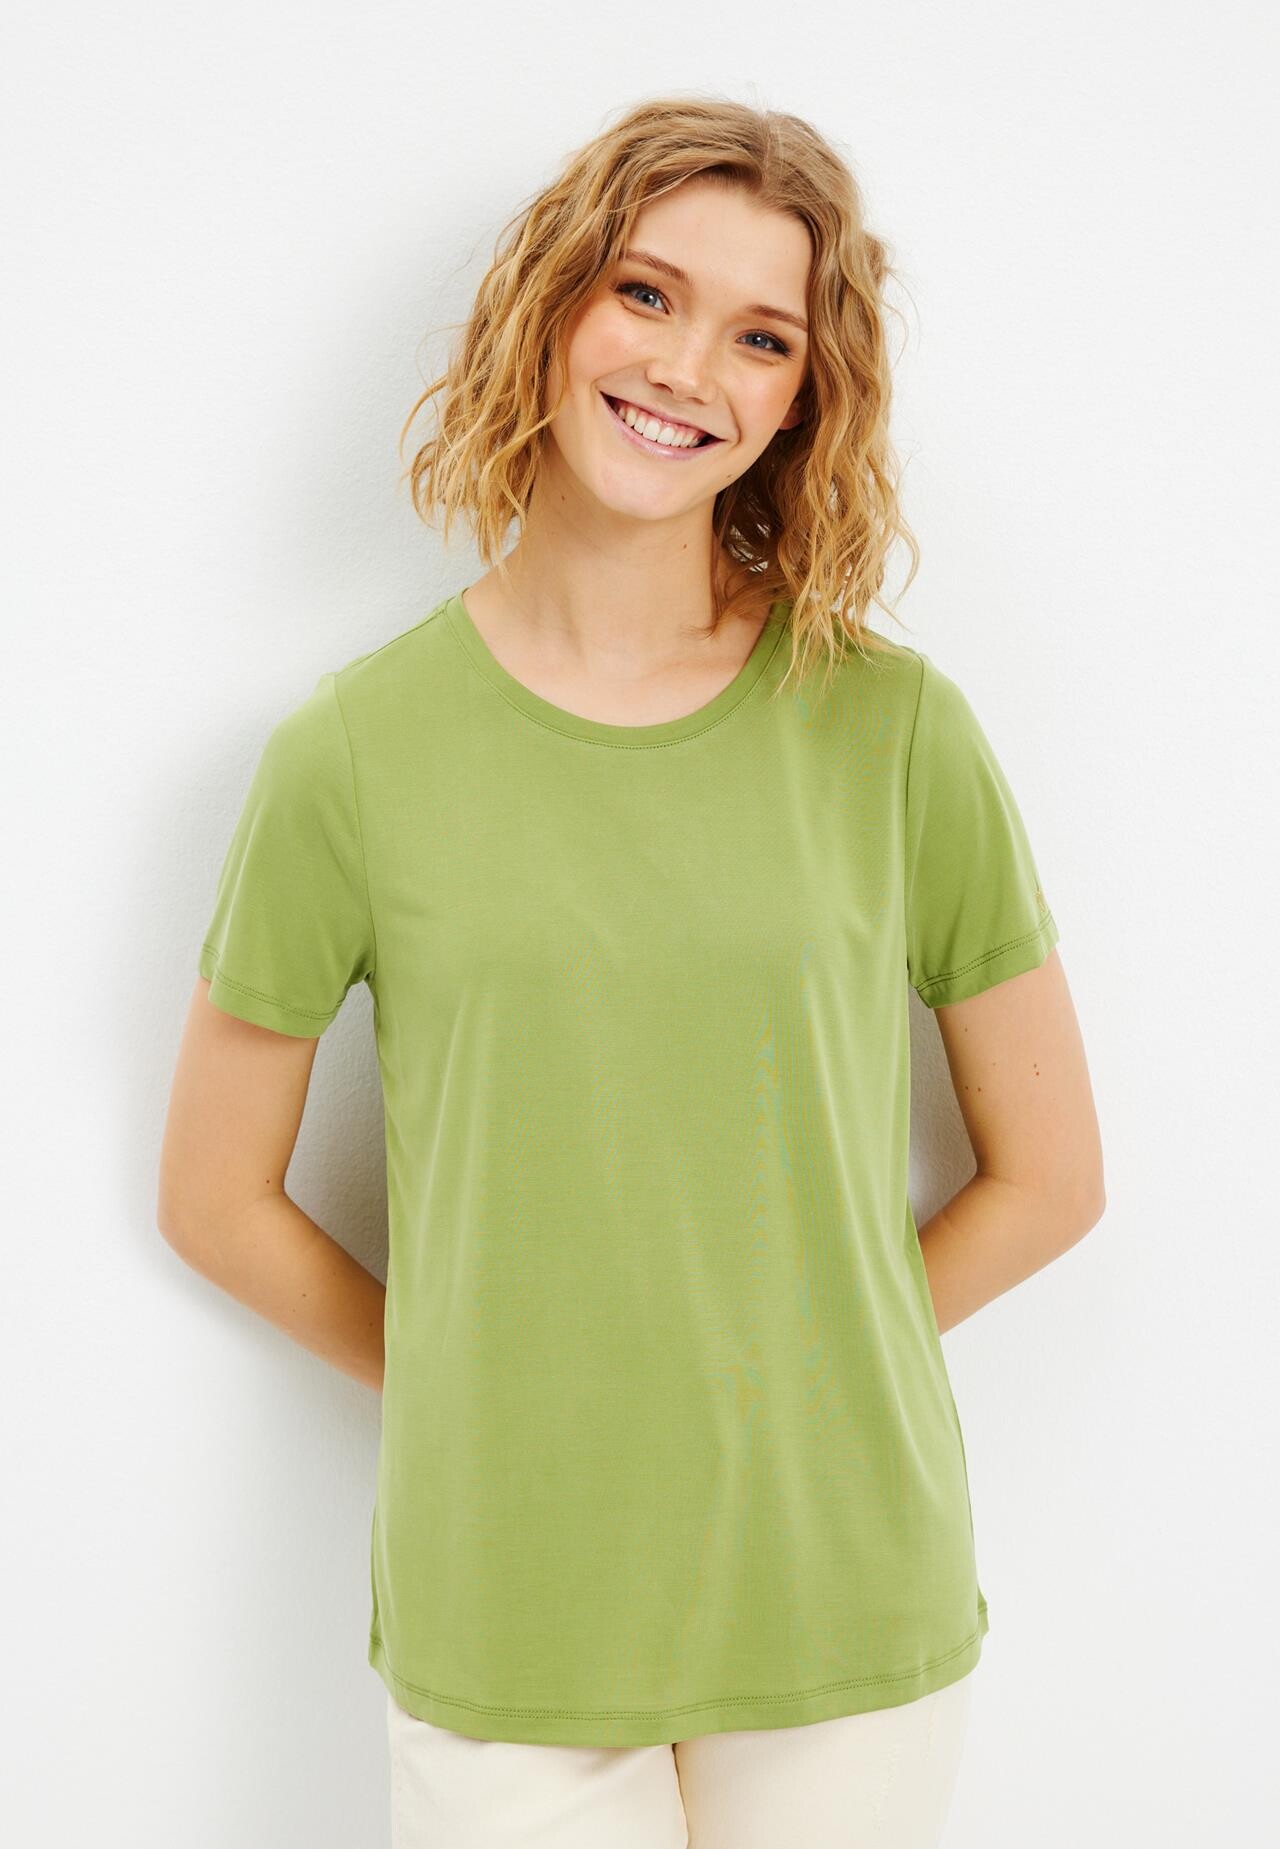 In Front Nina T-shirt, Farve: Apple Grøn, Størrelse: S, Dame